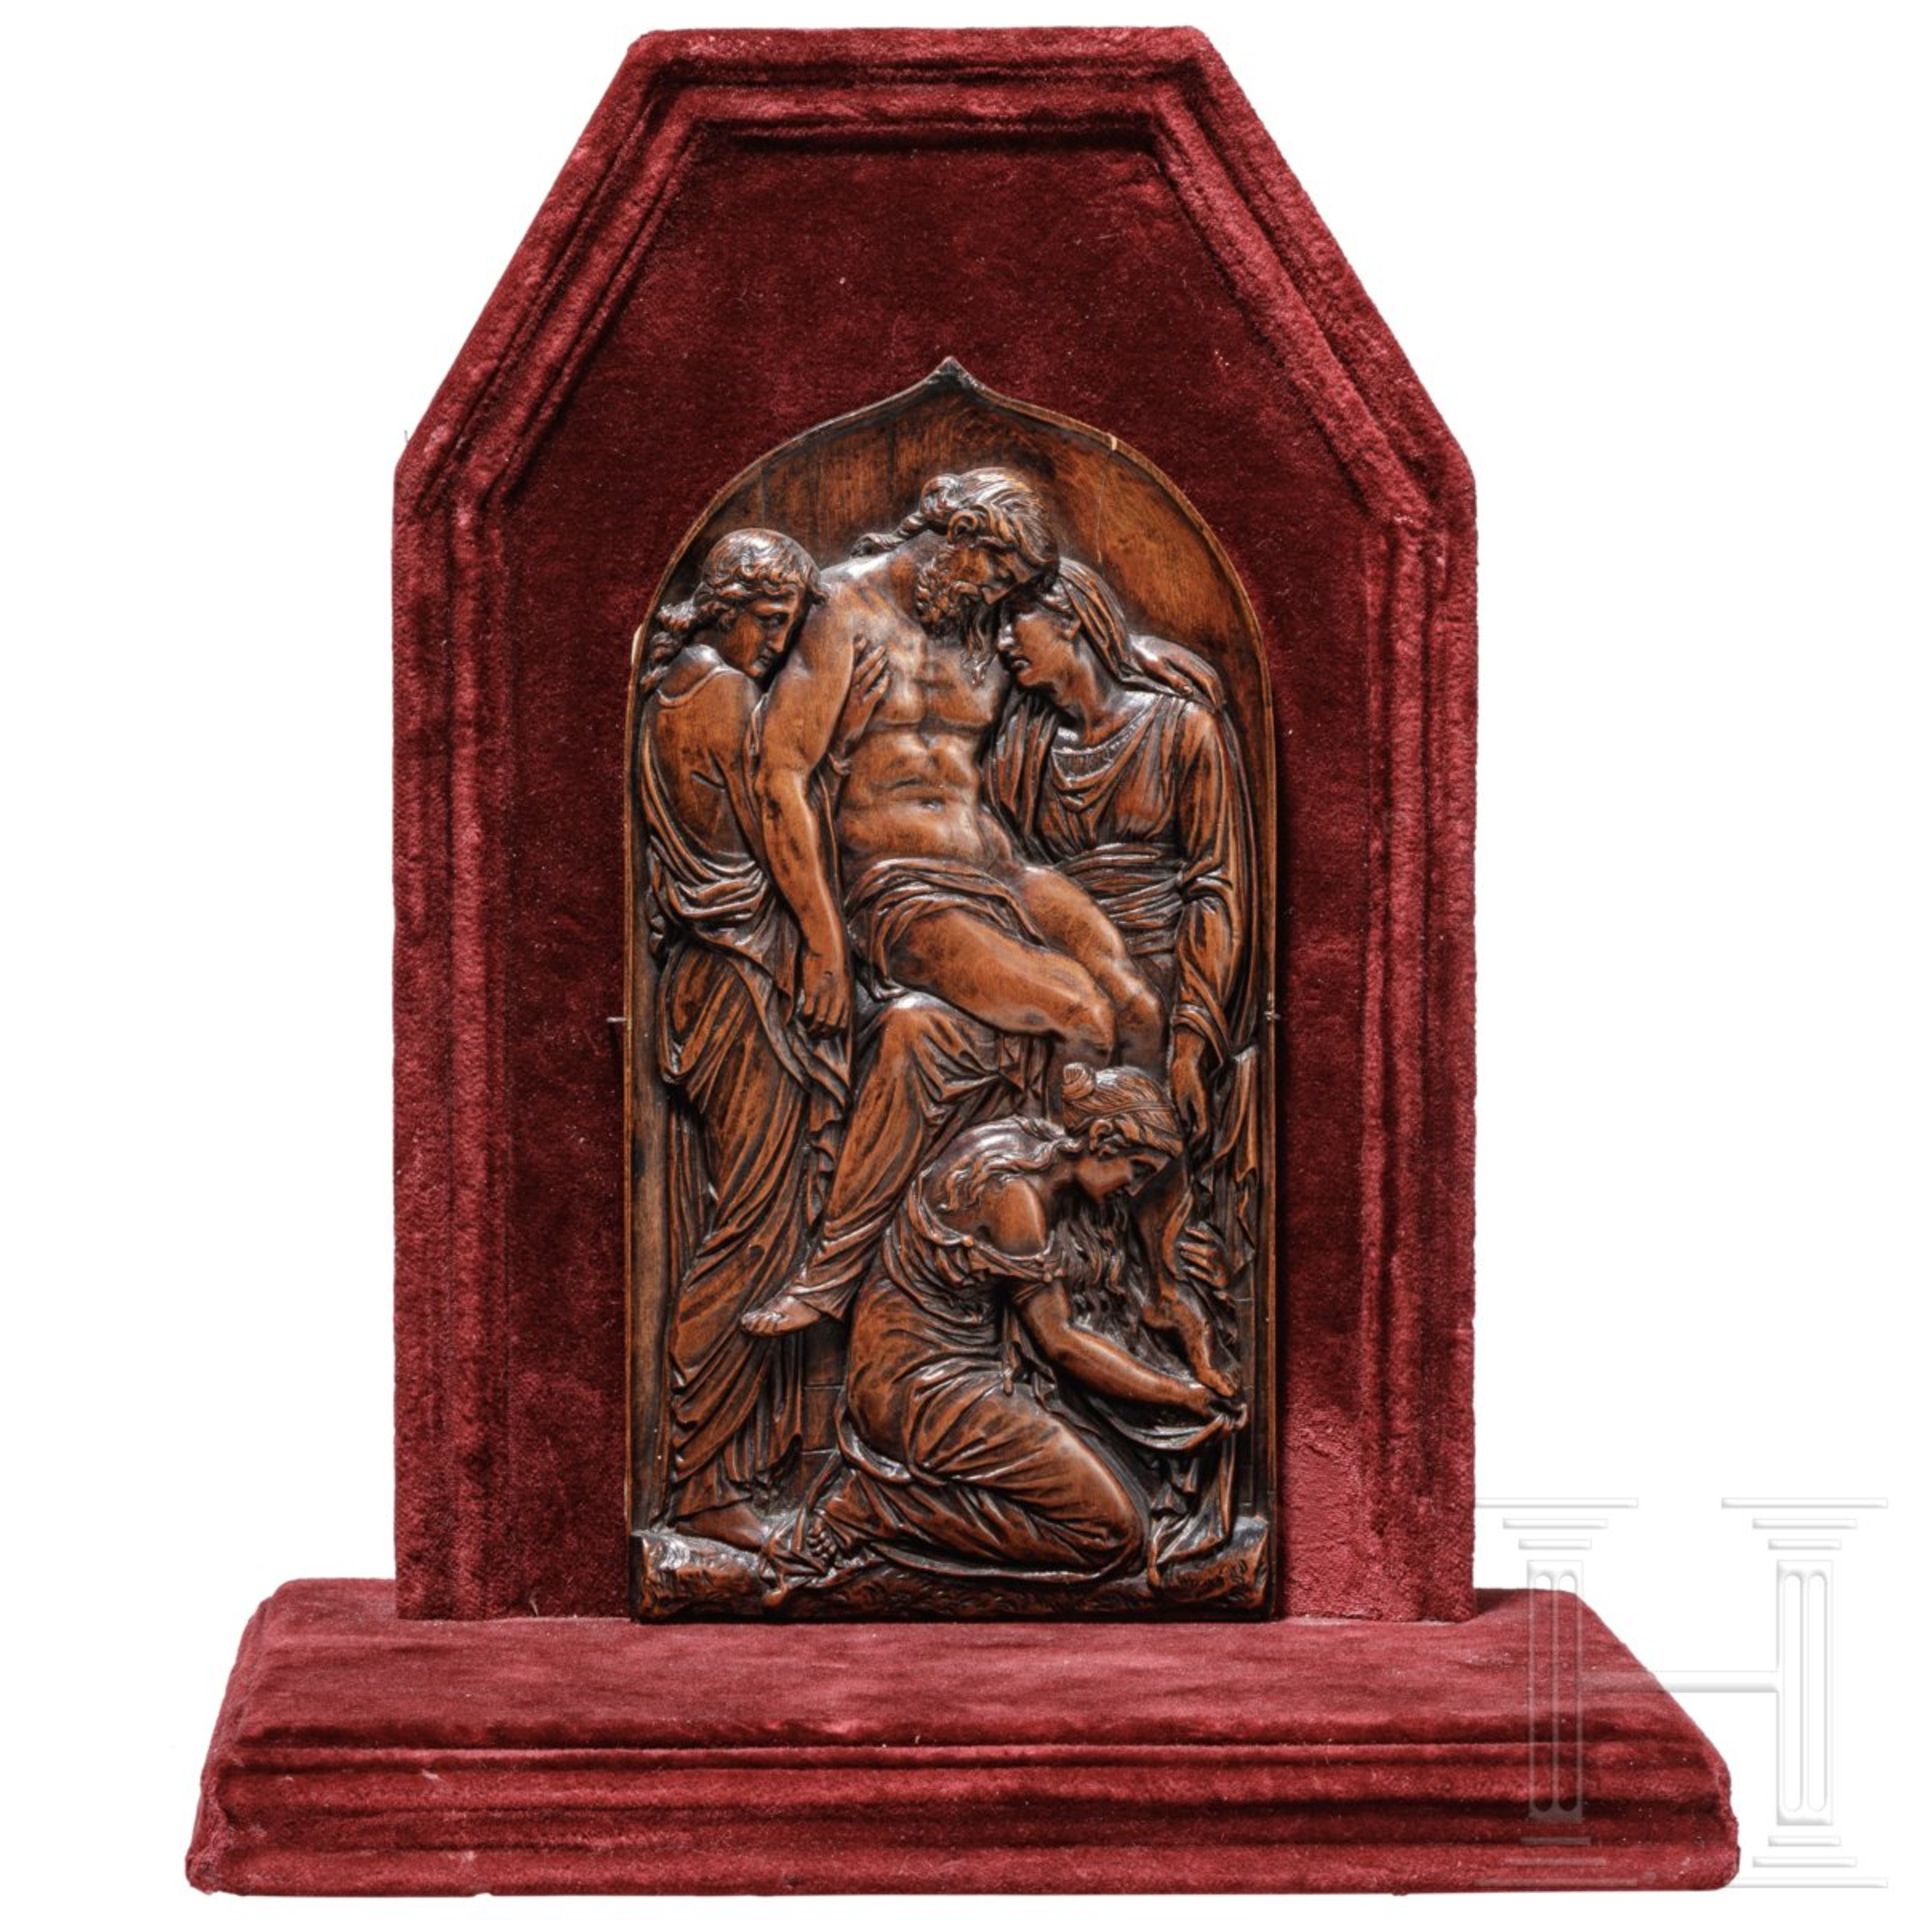 Buchsbaumrelief mit Darstellung der Beweinung Christi, Lothringen, Ende 16. Jhdt. - Image 2 of 8